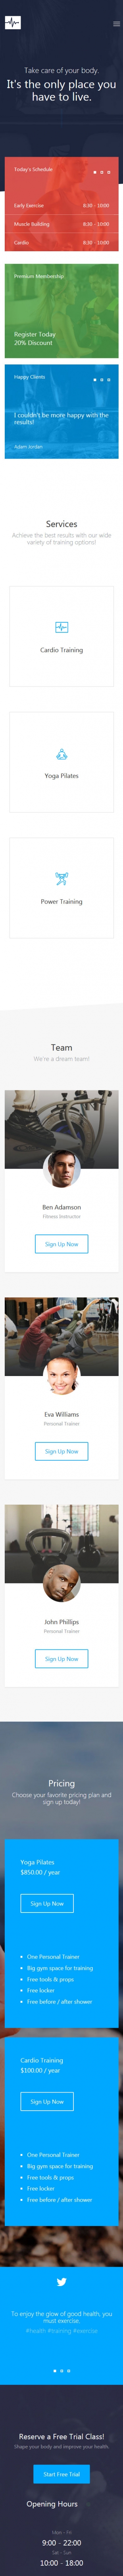 大图背景响应式运动健身英文官网网站模板手机图片